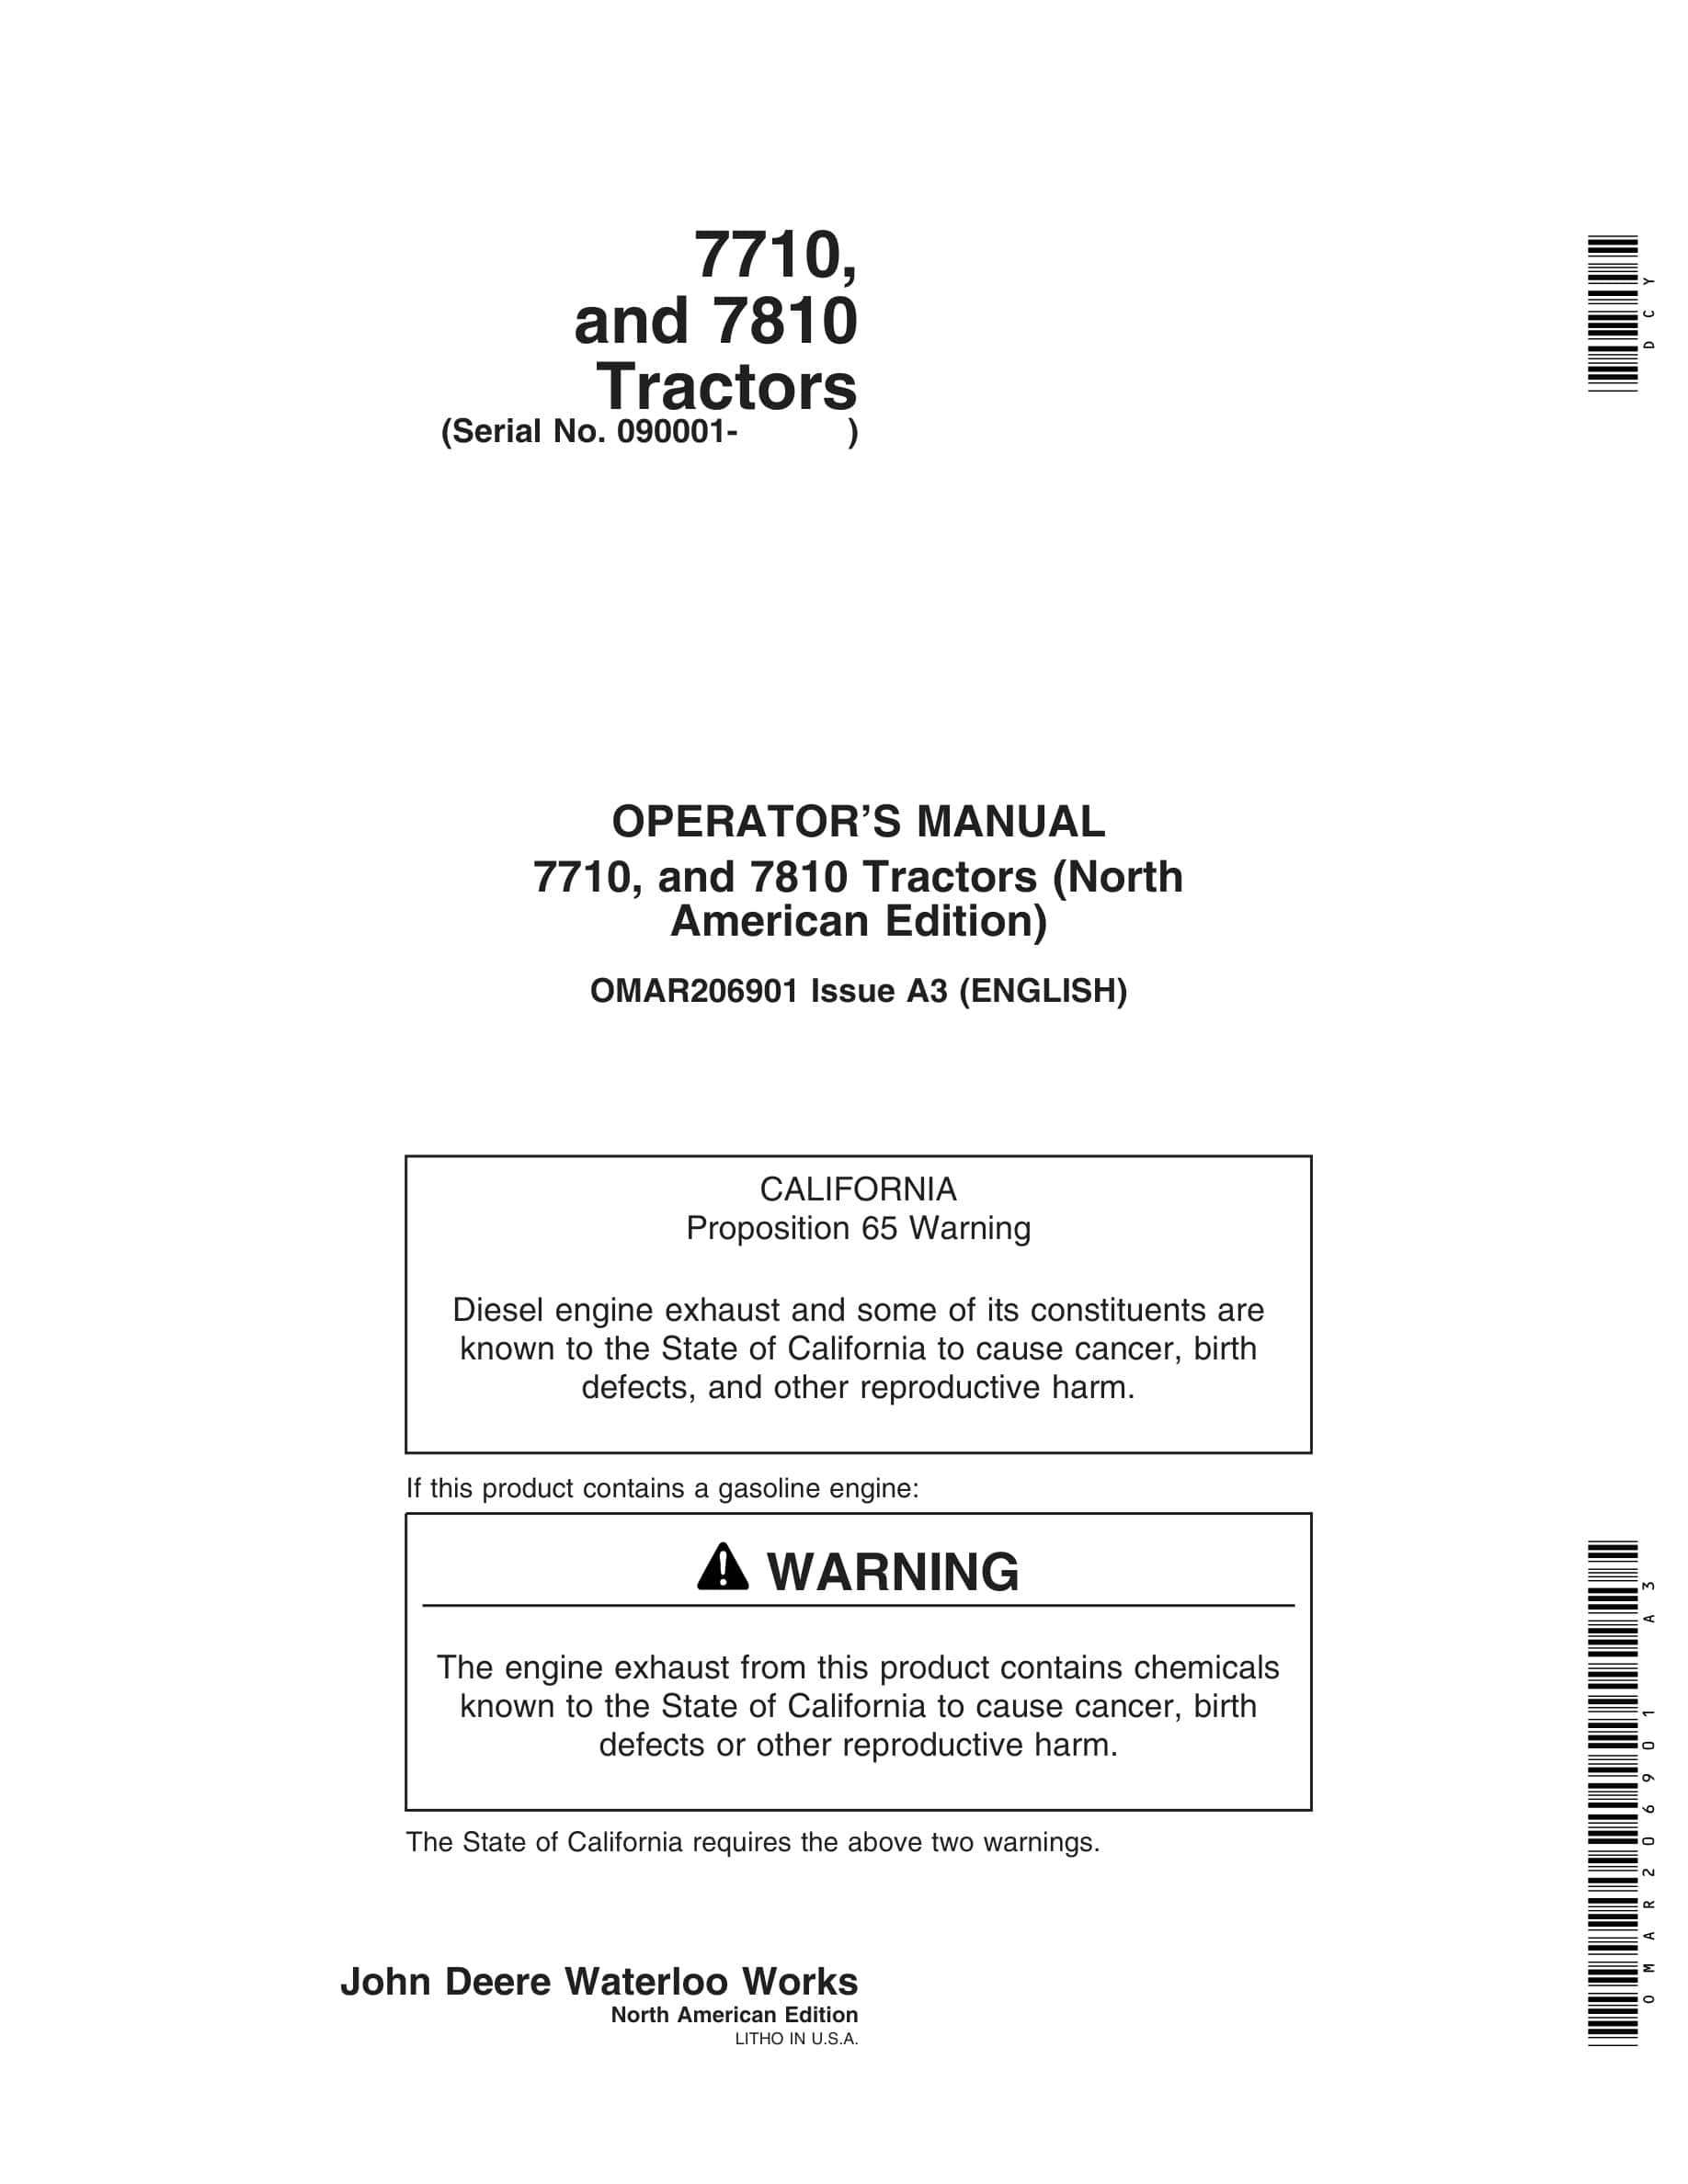 John Deere 7710, and 7810 Tractor Operator Manual OMAR206901-1